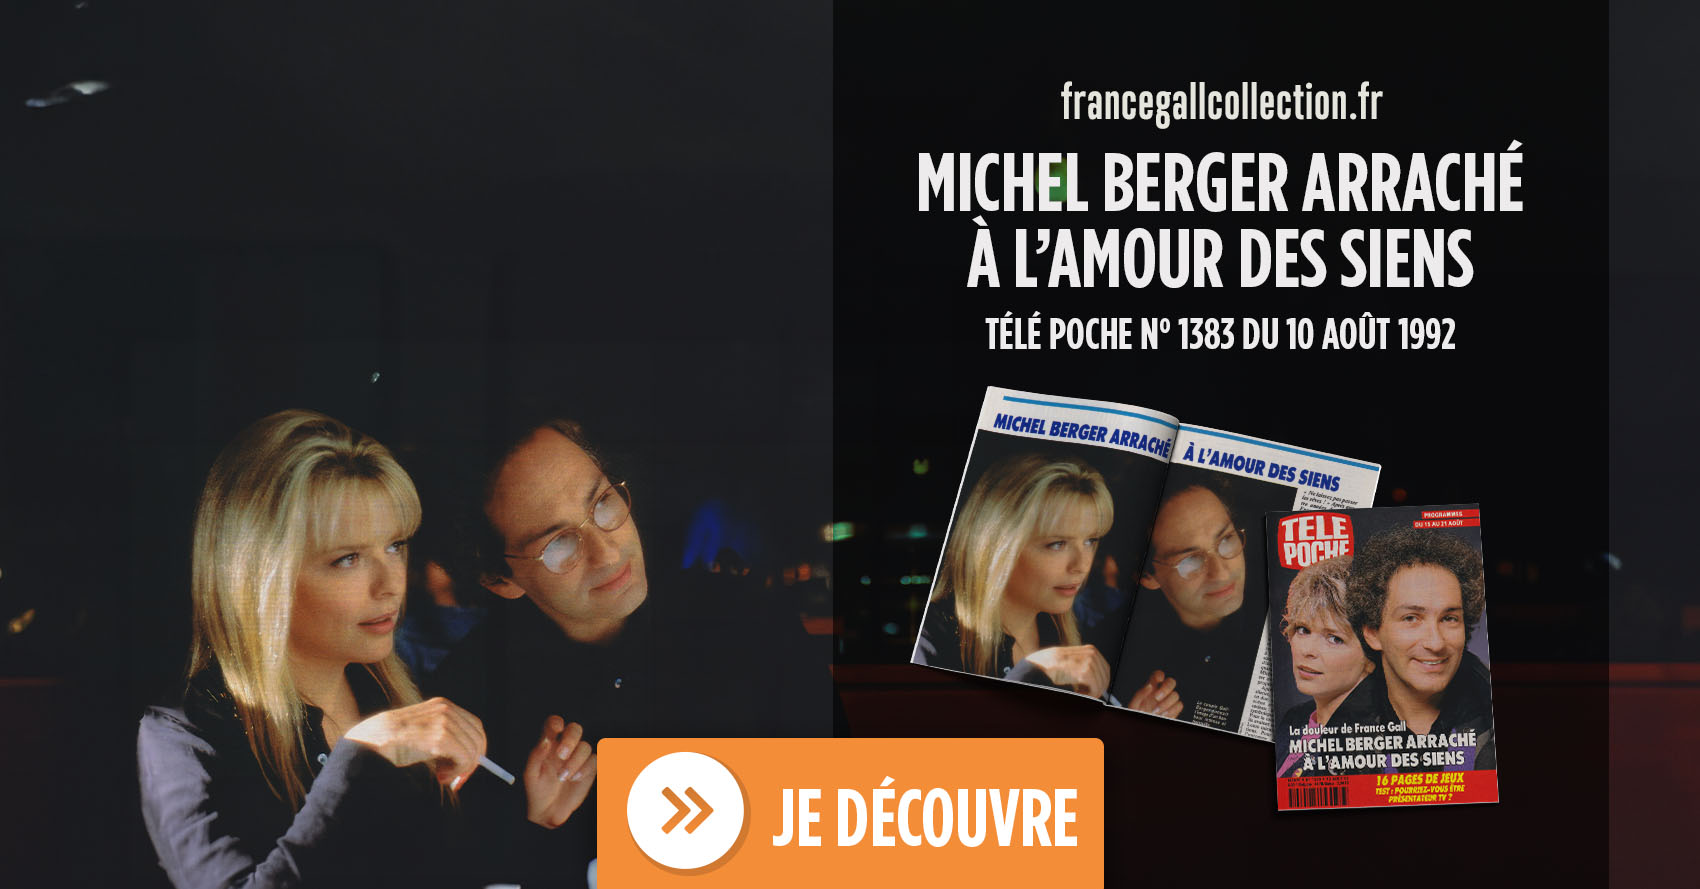 Après quatre années de silence, France Gall venait d’enregistrer son tout dernier album avec Michel Berger, l'homme de sa vie et de ses chansons depuis 19 ans.